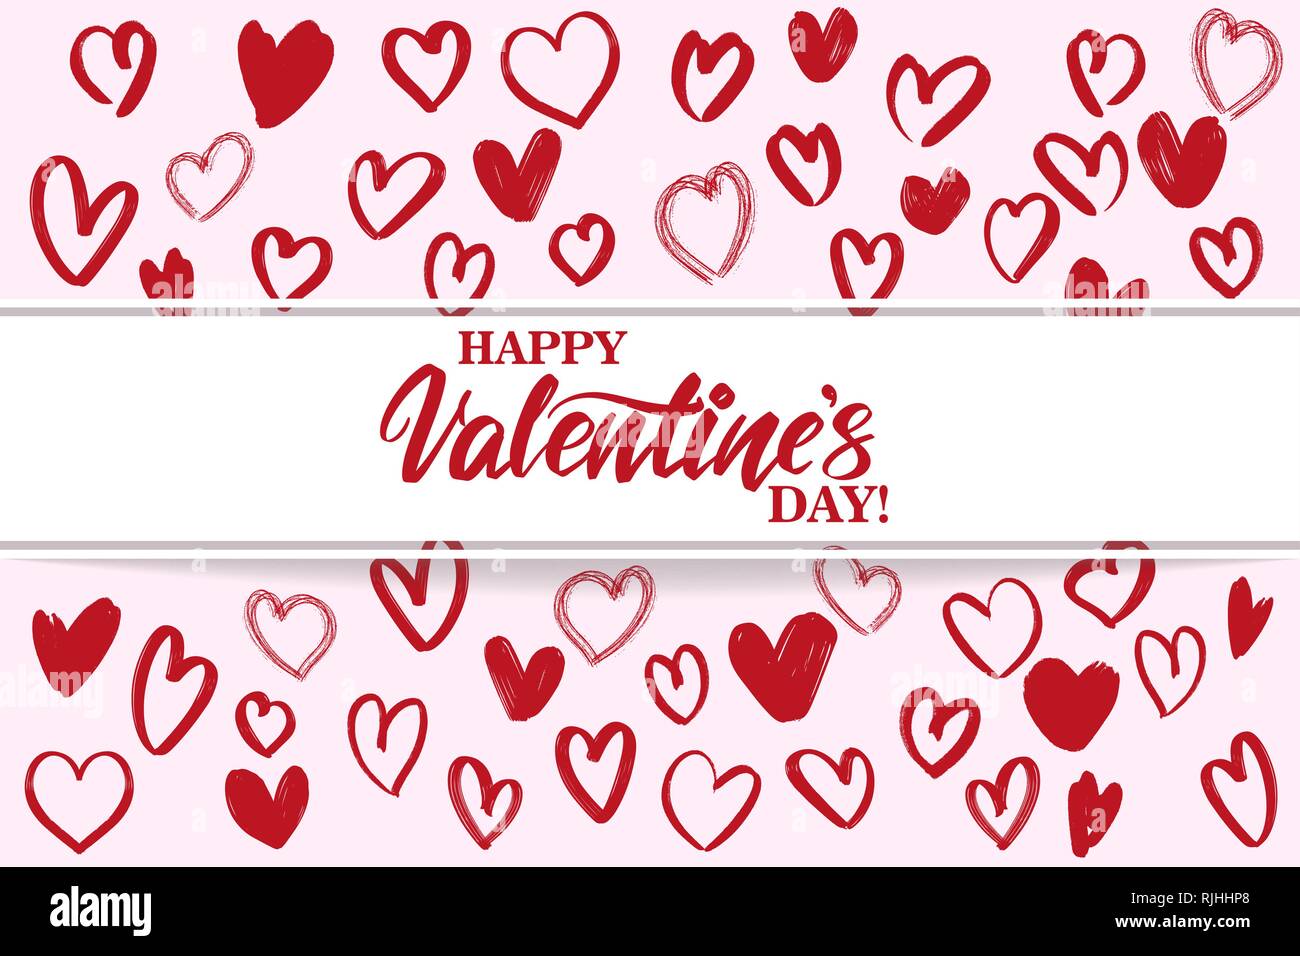 Happy Valentine s day text sur le fond des coeurs. , Valentine s day, carte de souhaits hand drawn vector illustration croquis. Lettrage calligraphie Illustration de Vecteur